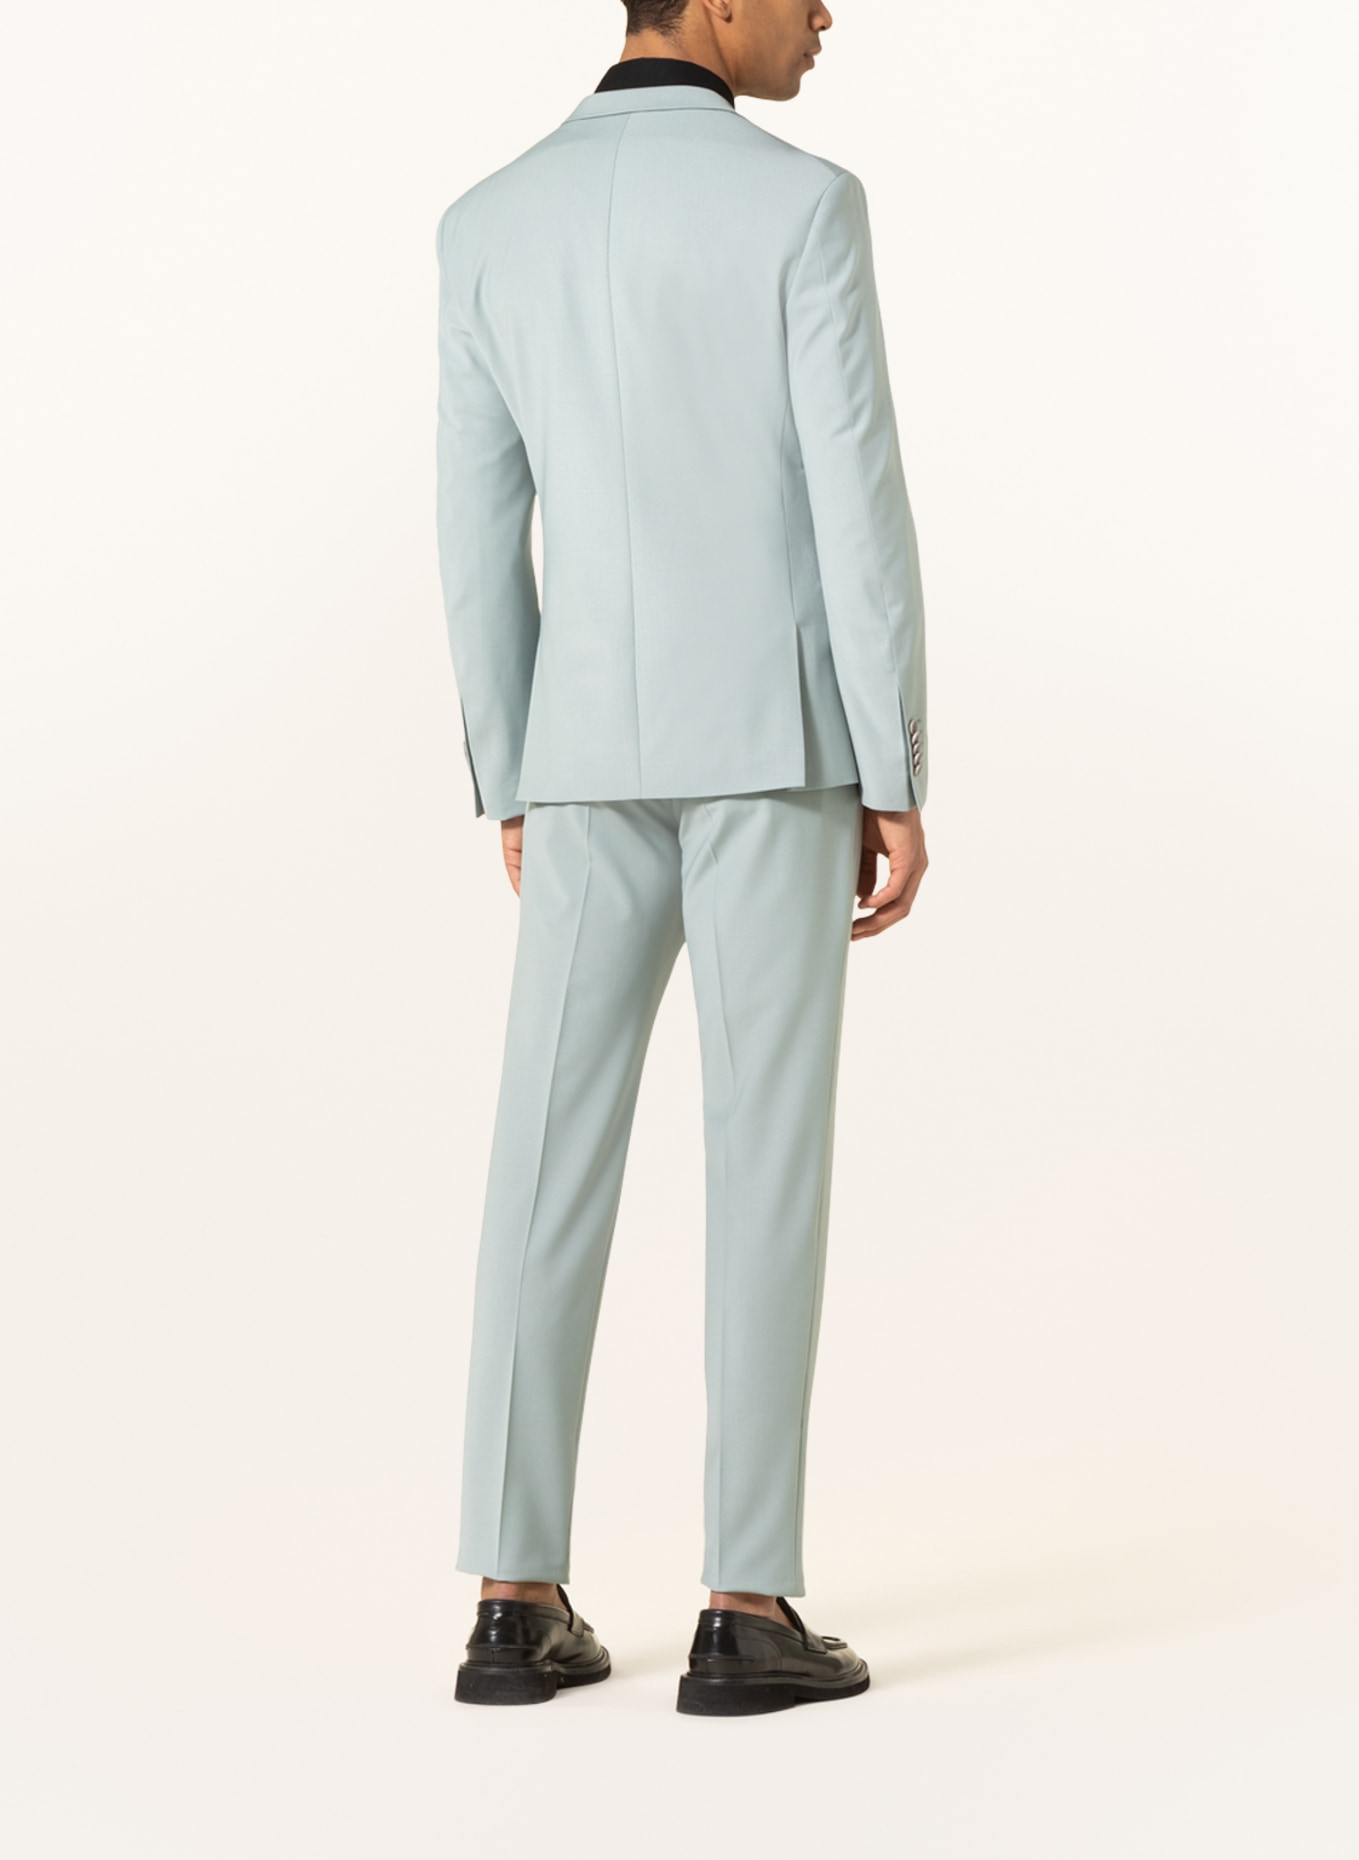 DRYKORN Suit jacket IRVING slim fit, Color: 2602 grün (Image 3)